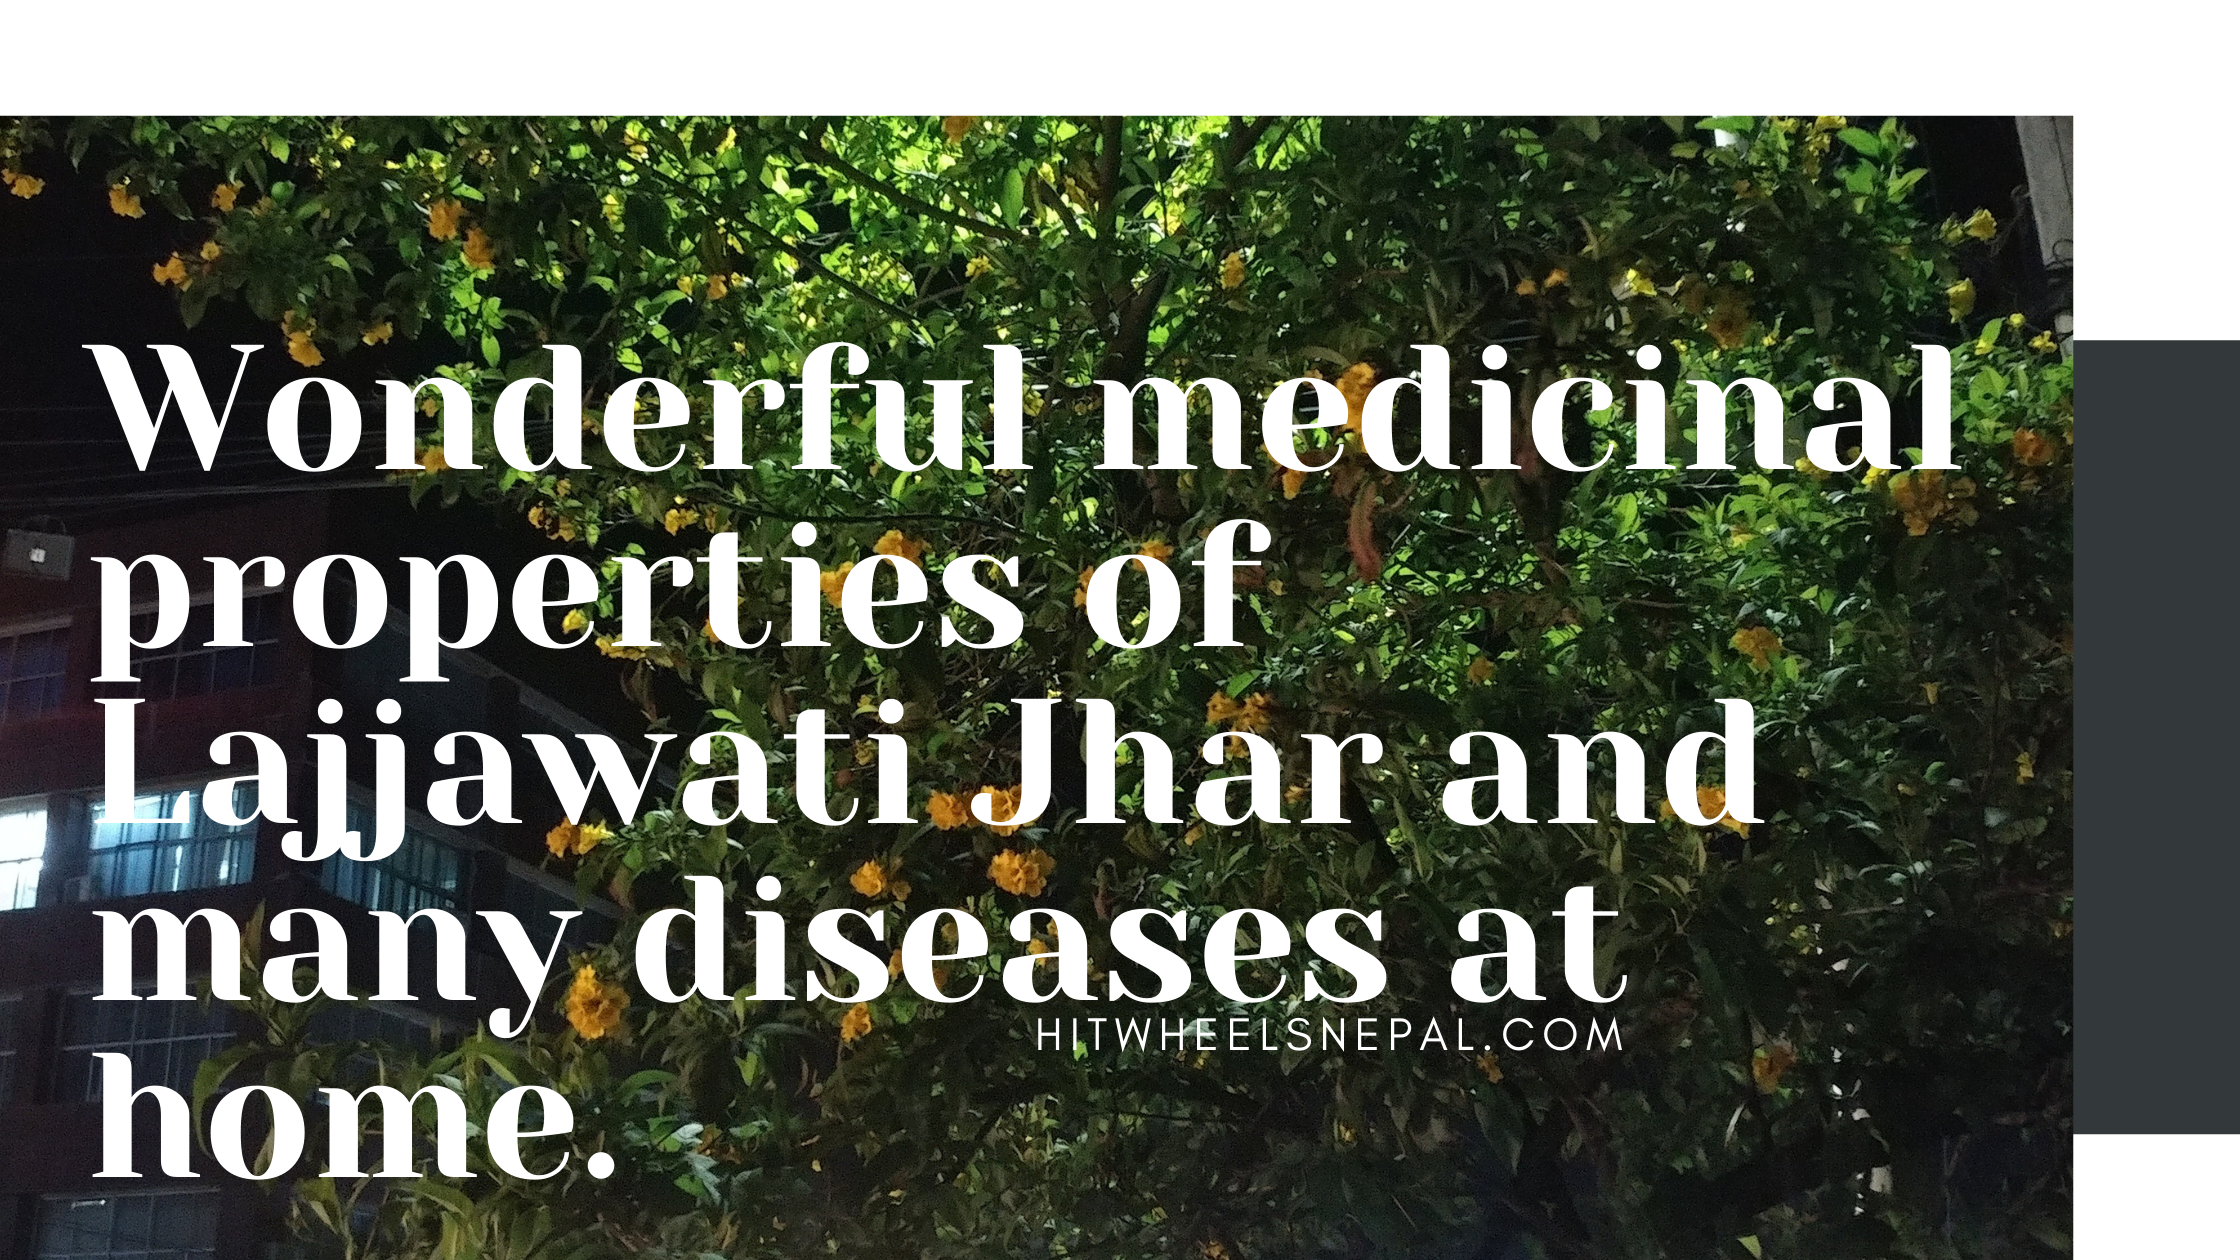 Wonderful medicinal properties of Lajjawati Jhar and many diseases at home.